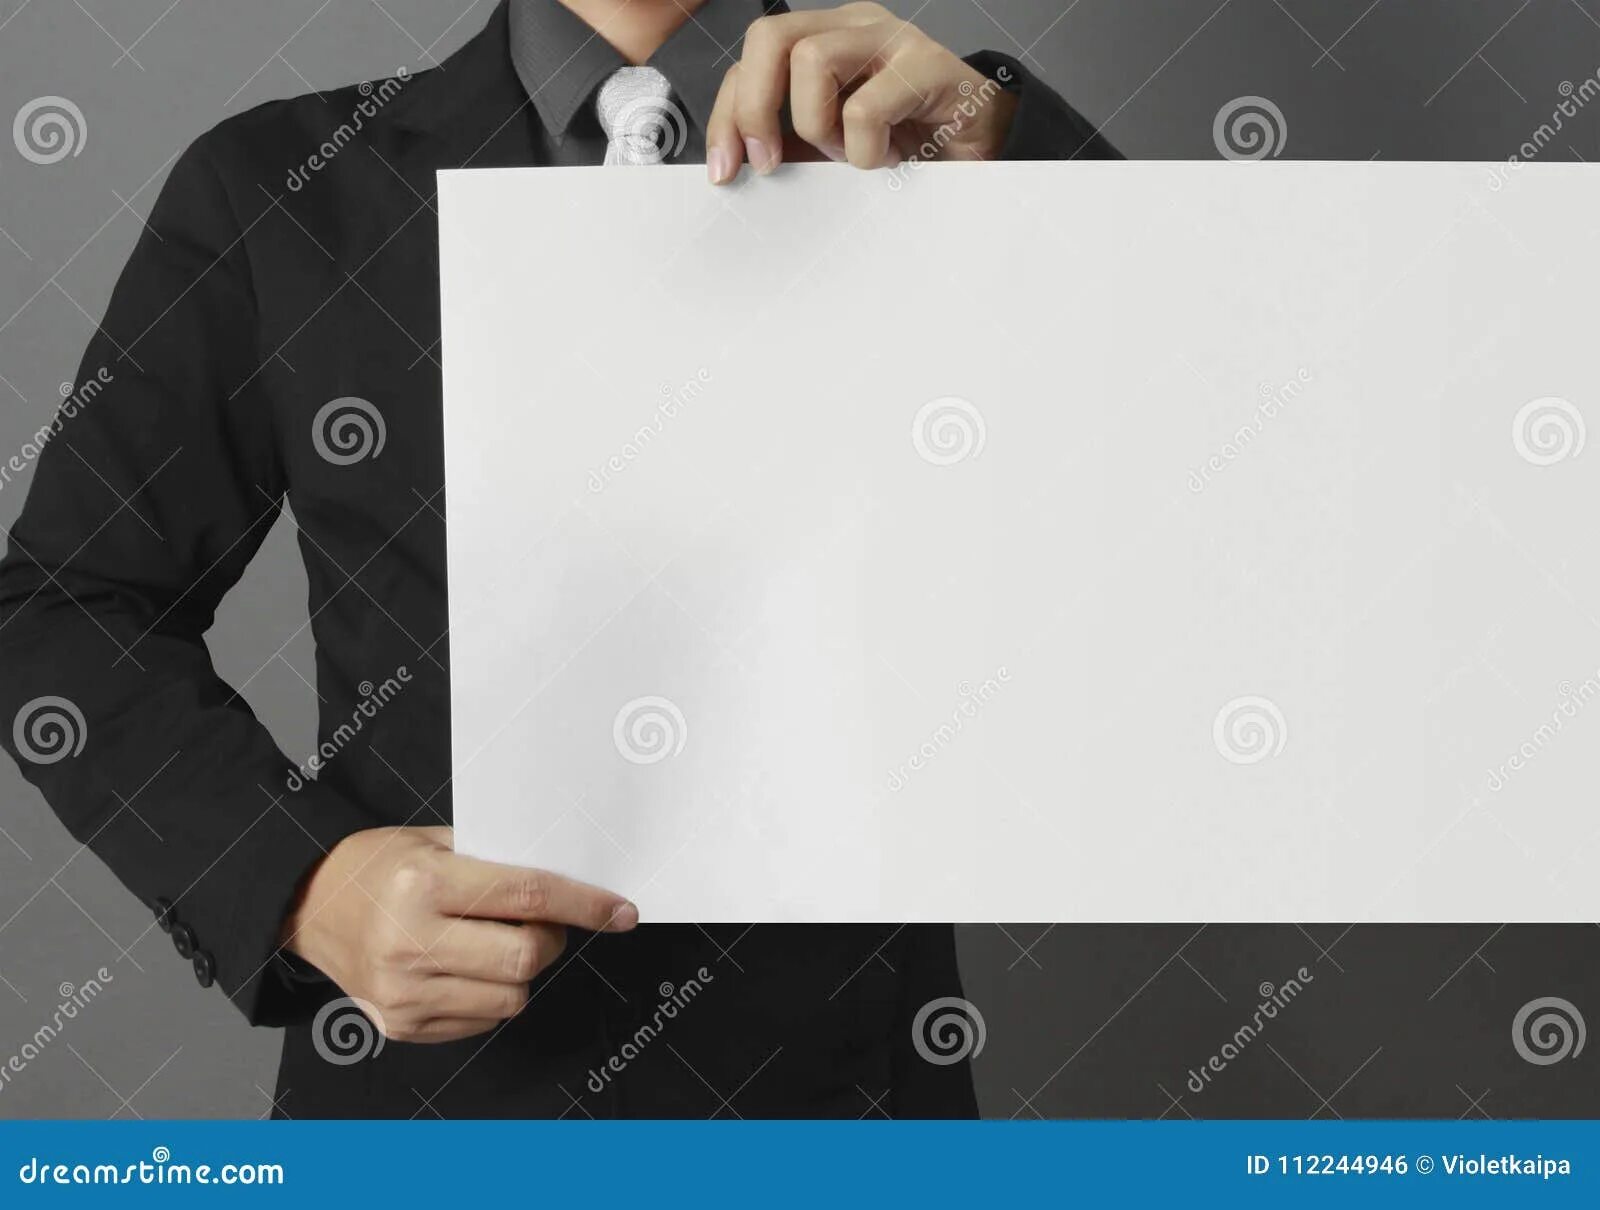 Группа чистый лист. С чистого листа. Чистый белый лист. Чистый лист бумаги. Люди с белым листом бумаги.